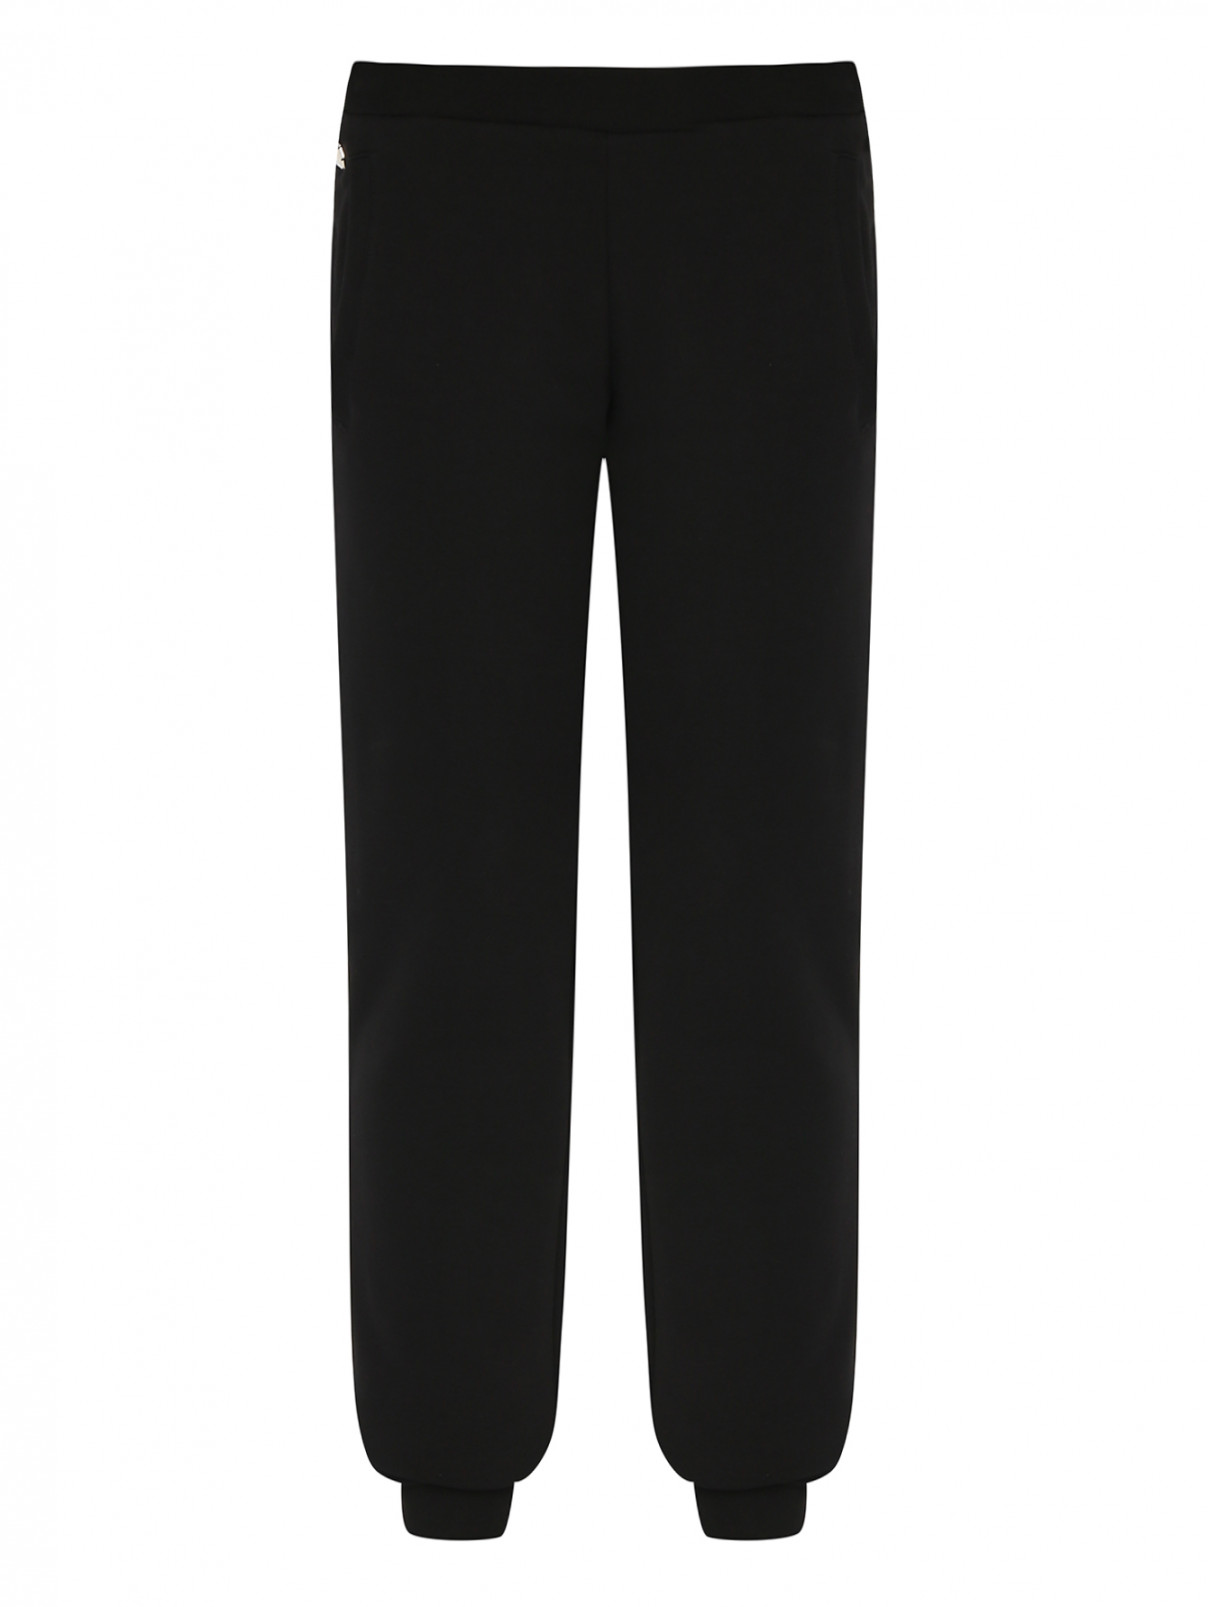 Хлопковые брюки со стразами Philipp Plein  –  Общий вид  – Цвет:  Черный